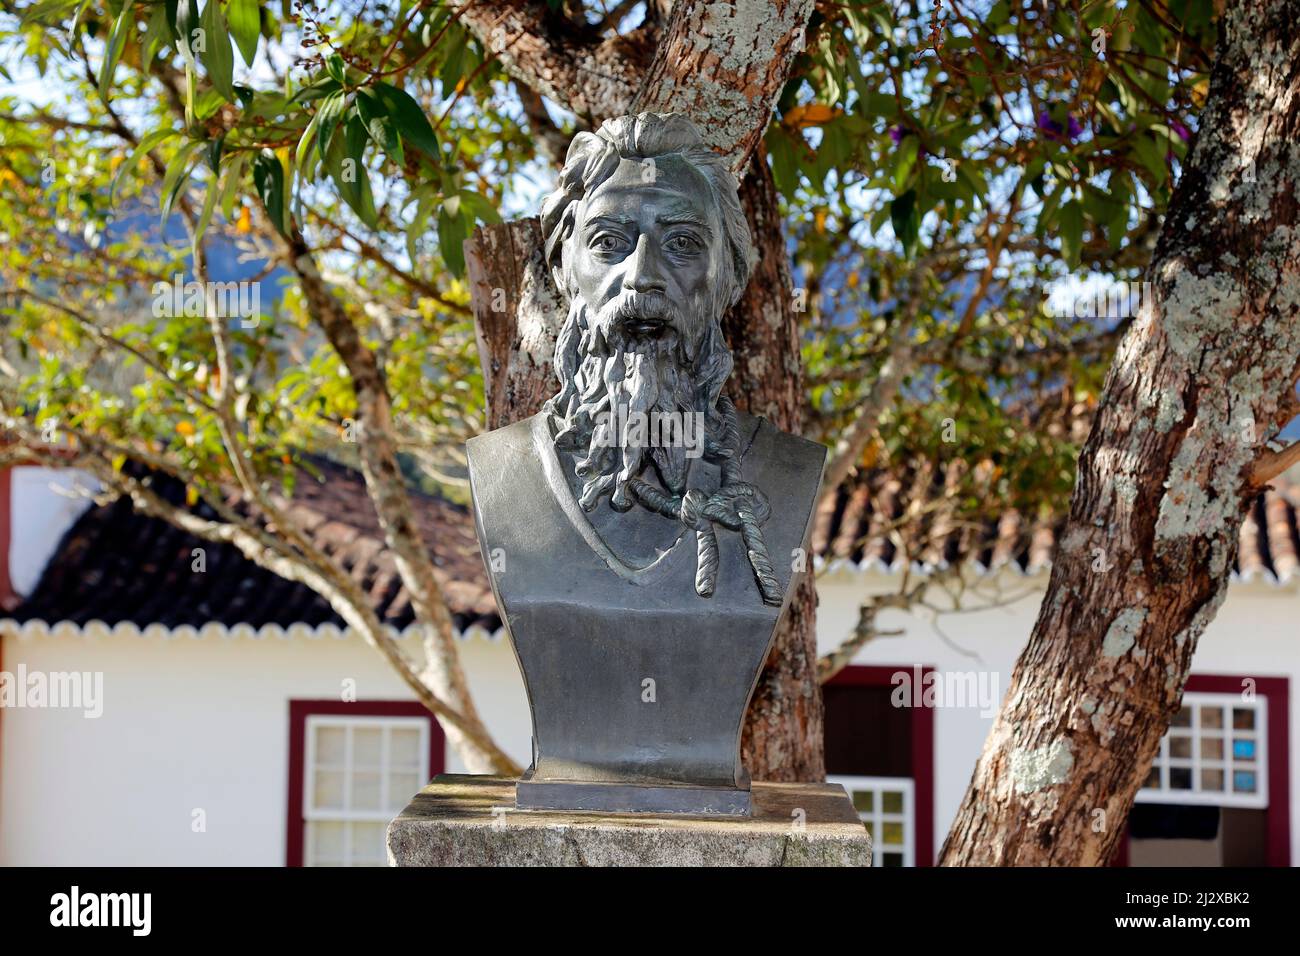 Statue métallique de Tiradentes représentant l'enseigne sur une route publique Banque D'Images